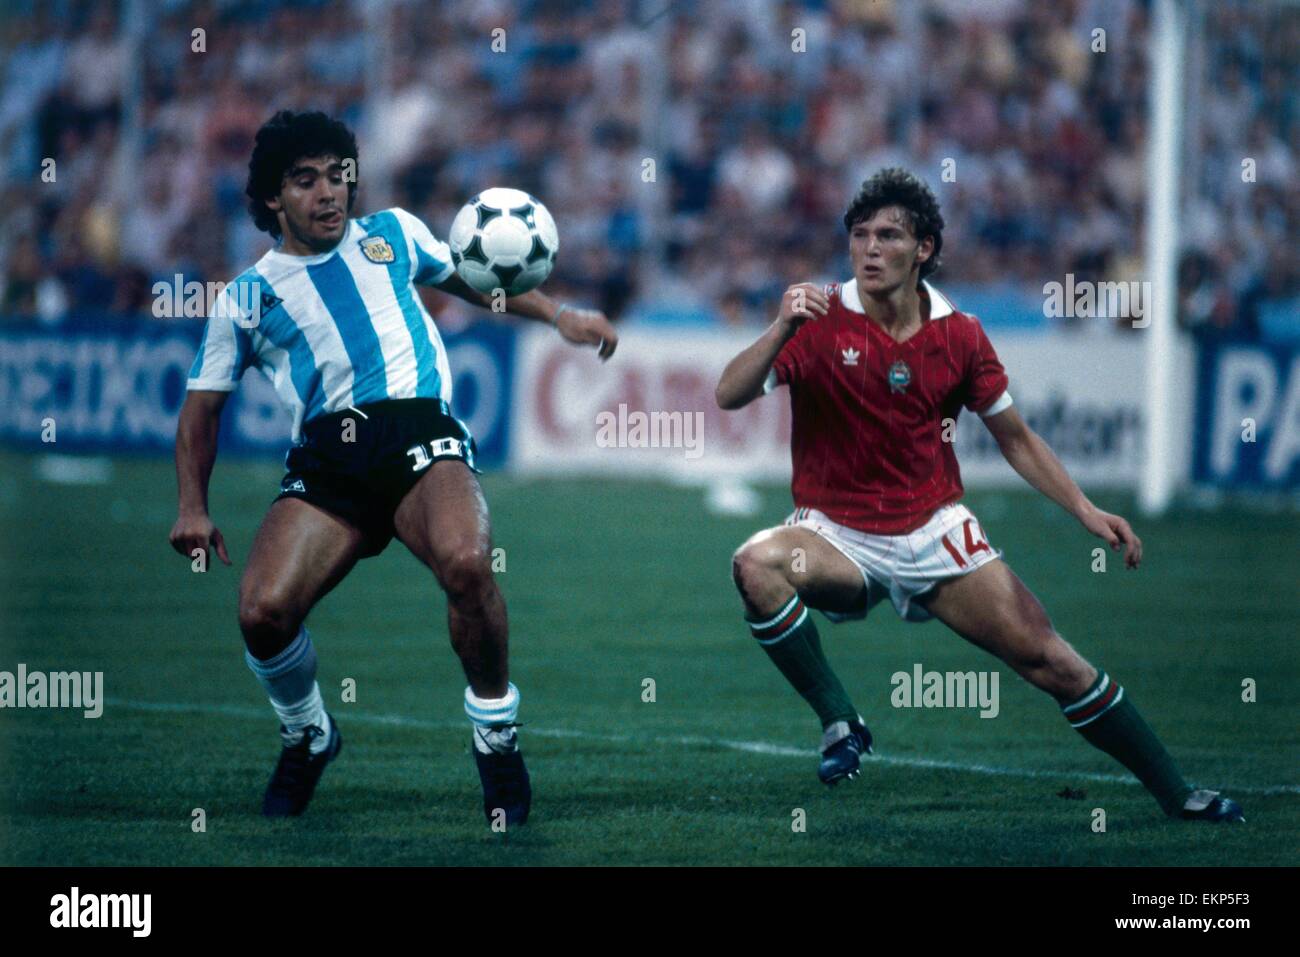 1982 World Cup Gruppe drei entsprechen in Alicante, Spanien. Argentinien 4 V Ungarn 1. Argentiniens Diego Maradona kämpft um den Ball mit dem Ungarn Sandor Sallai. 18. Juni 1982. Stockfoto